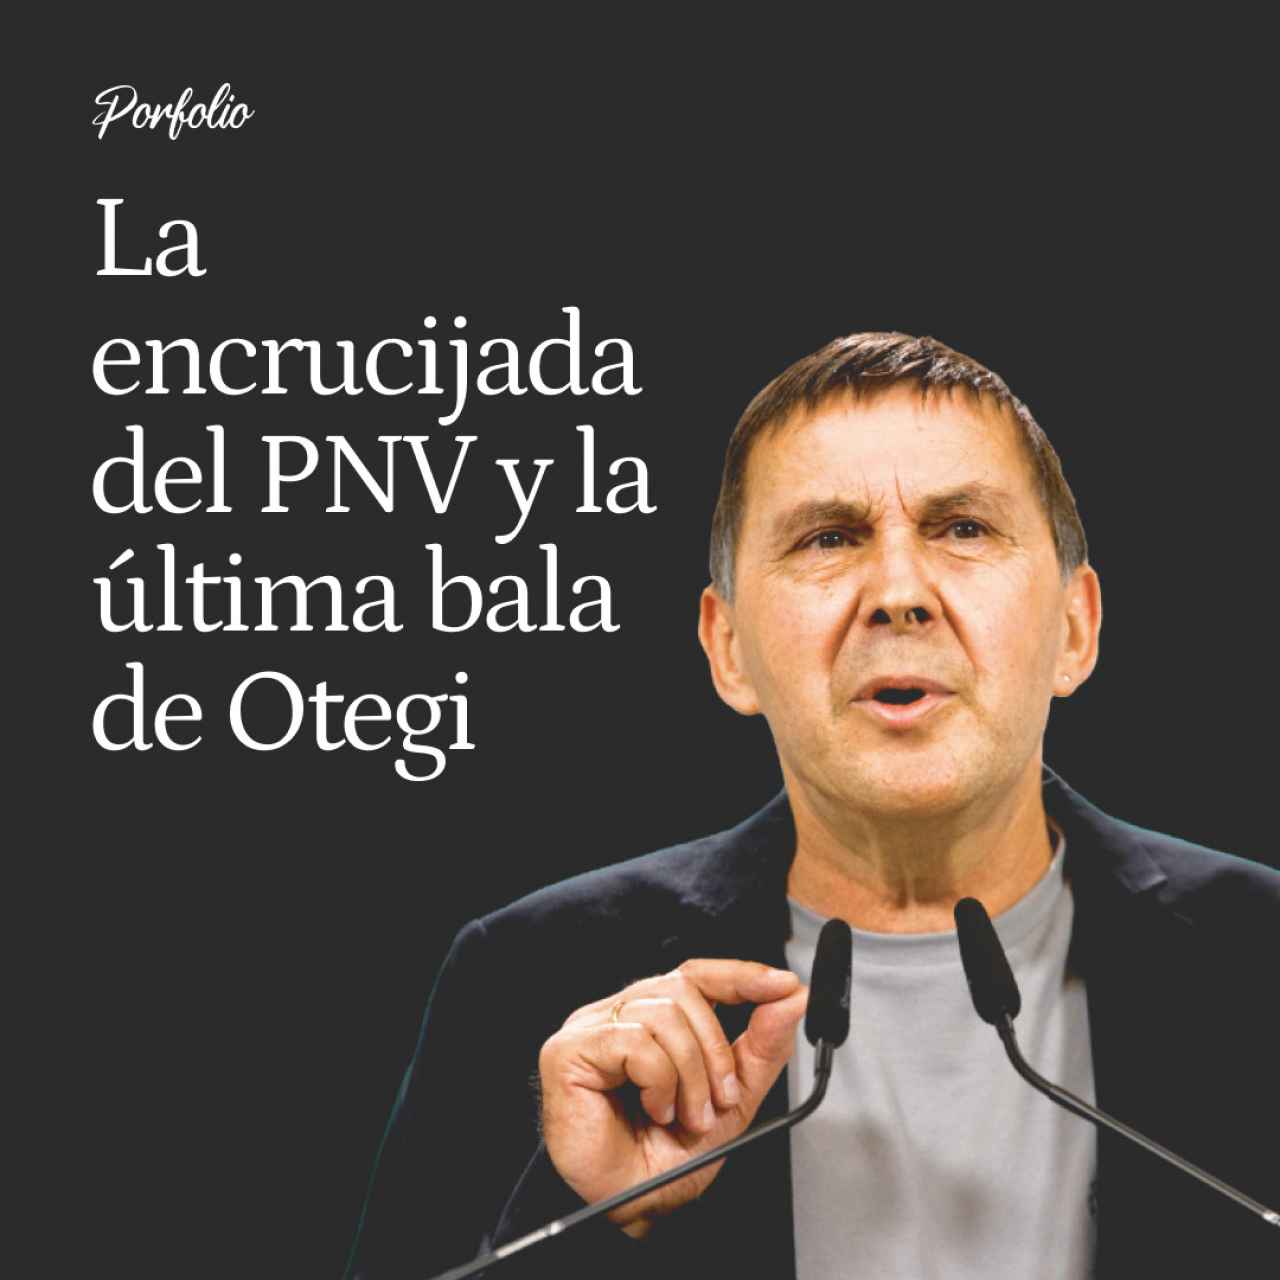 La encrucijada del PNV y la última bala de Otegi: "Es imposible que el PSE lo haga lehendakari"